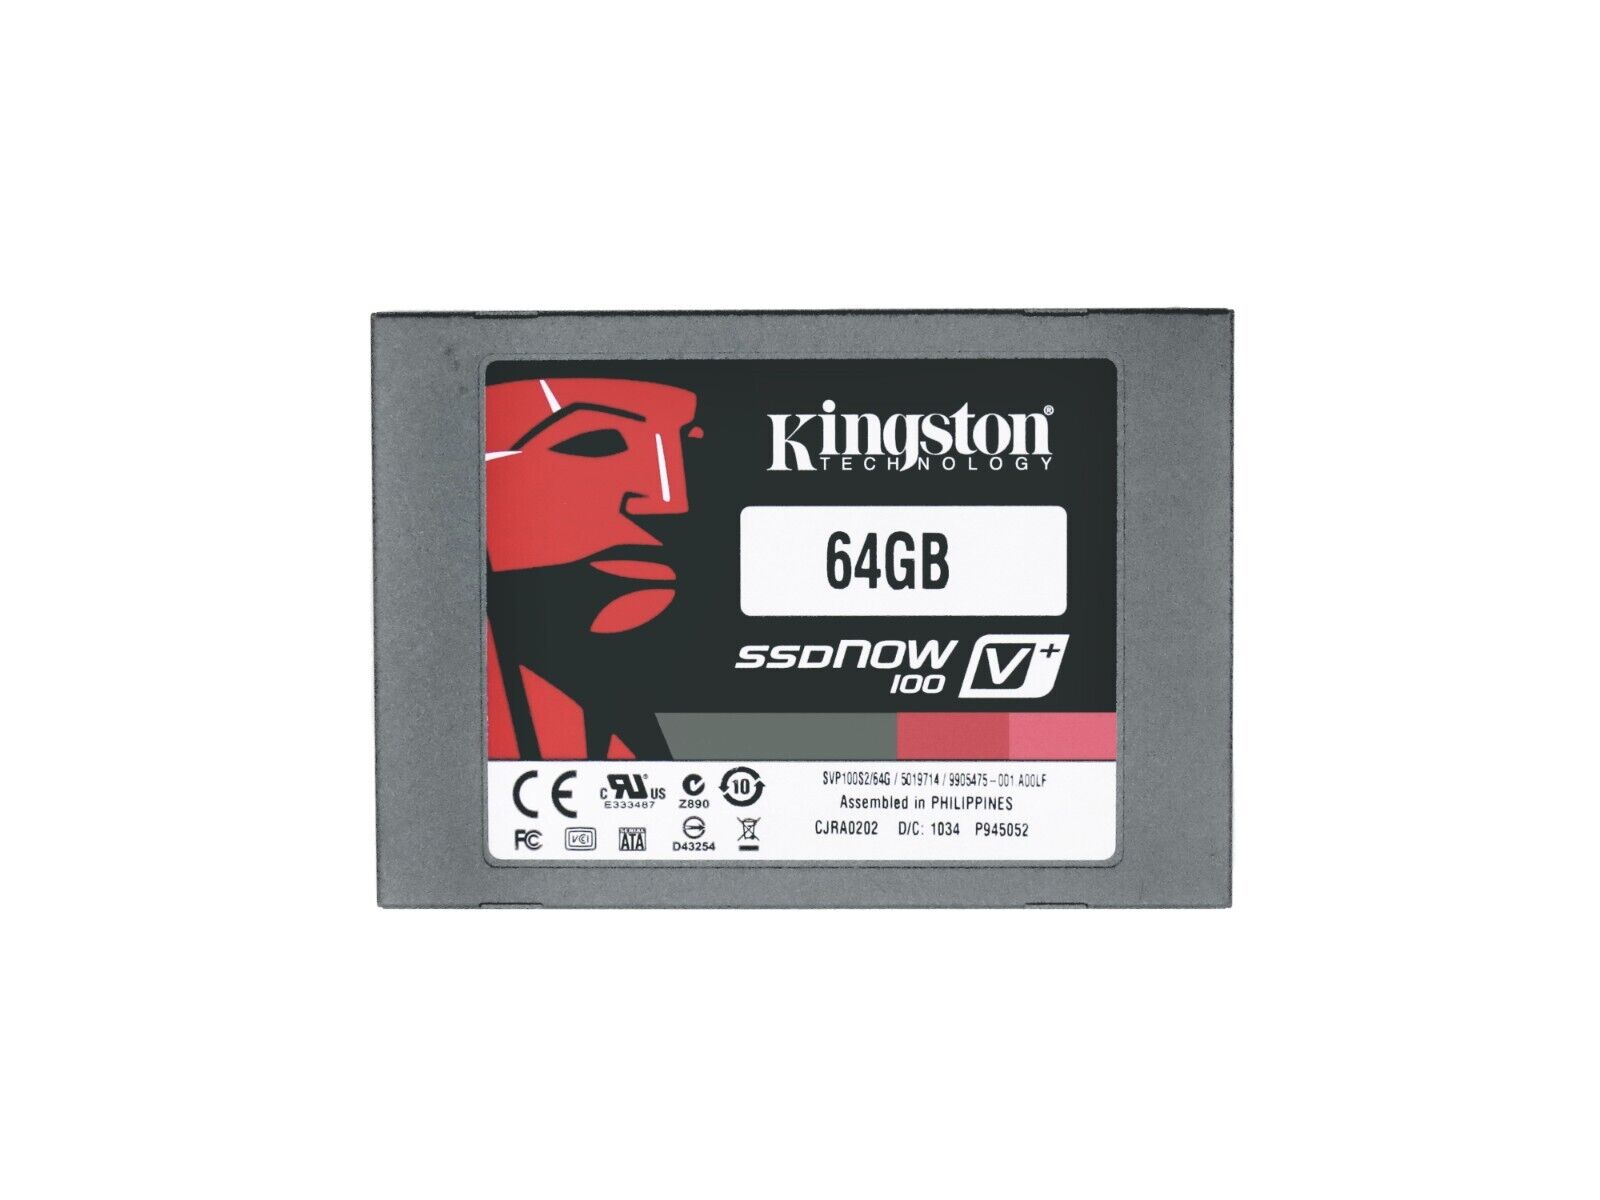 Kingston SVP100S2/64G SSDNow V+100 Series 64GB SATA 3Gbps MLC SSD